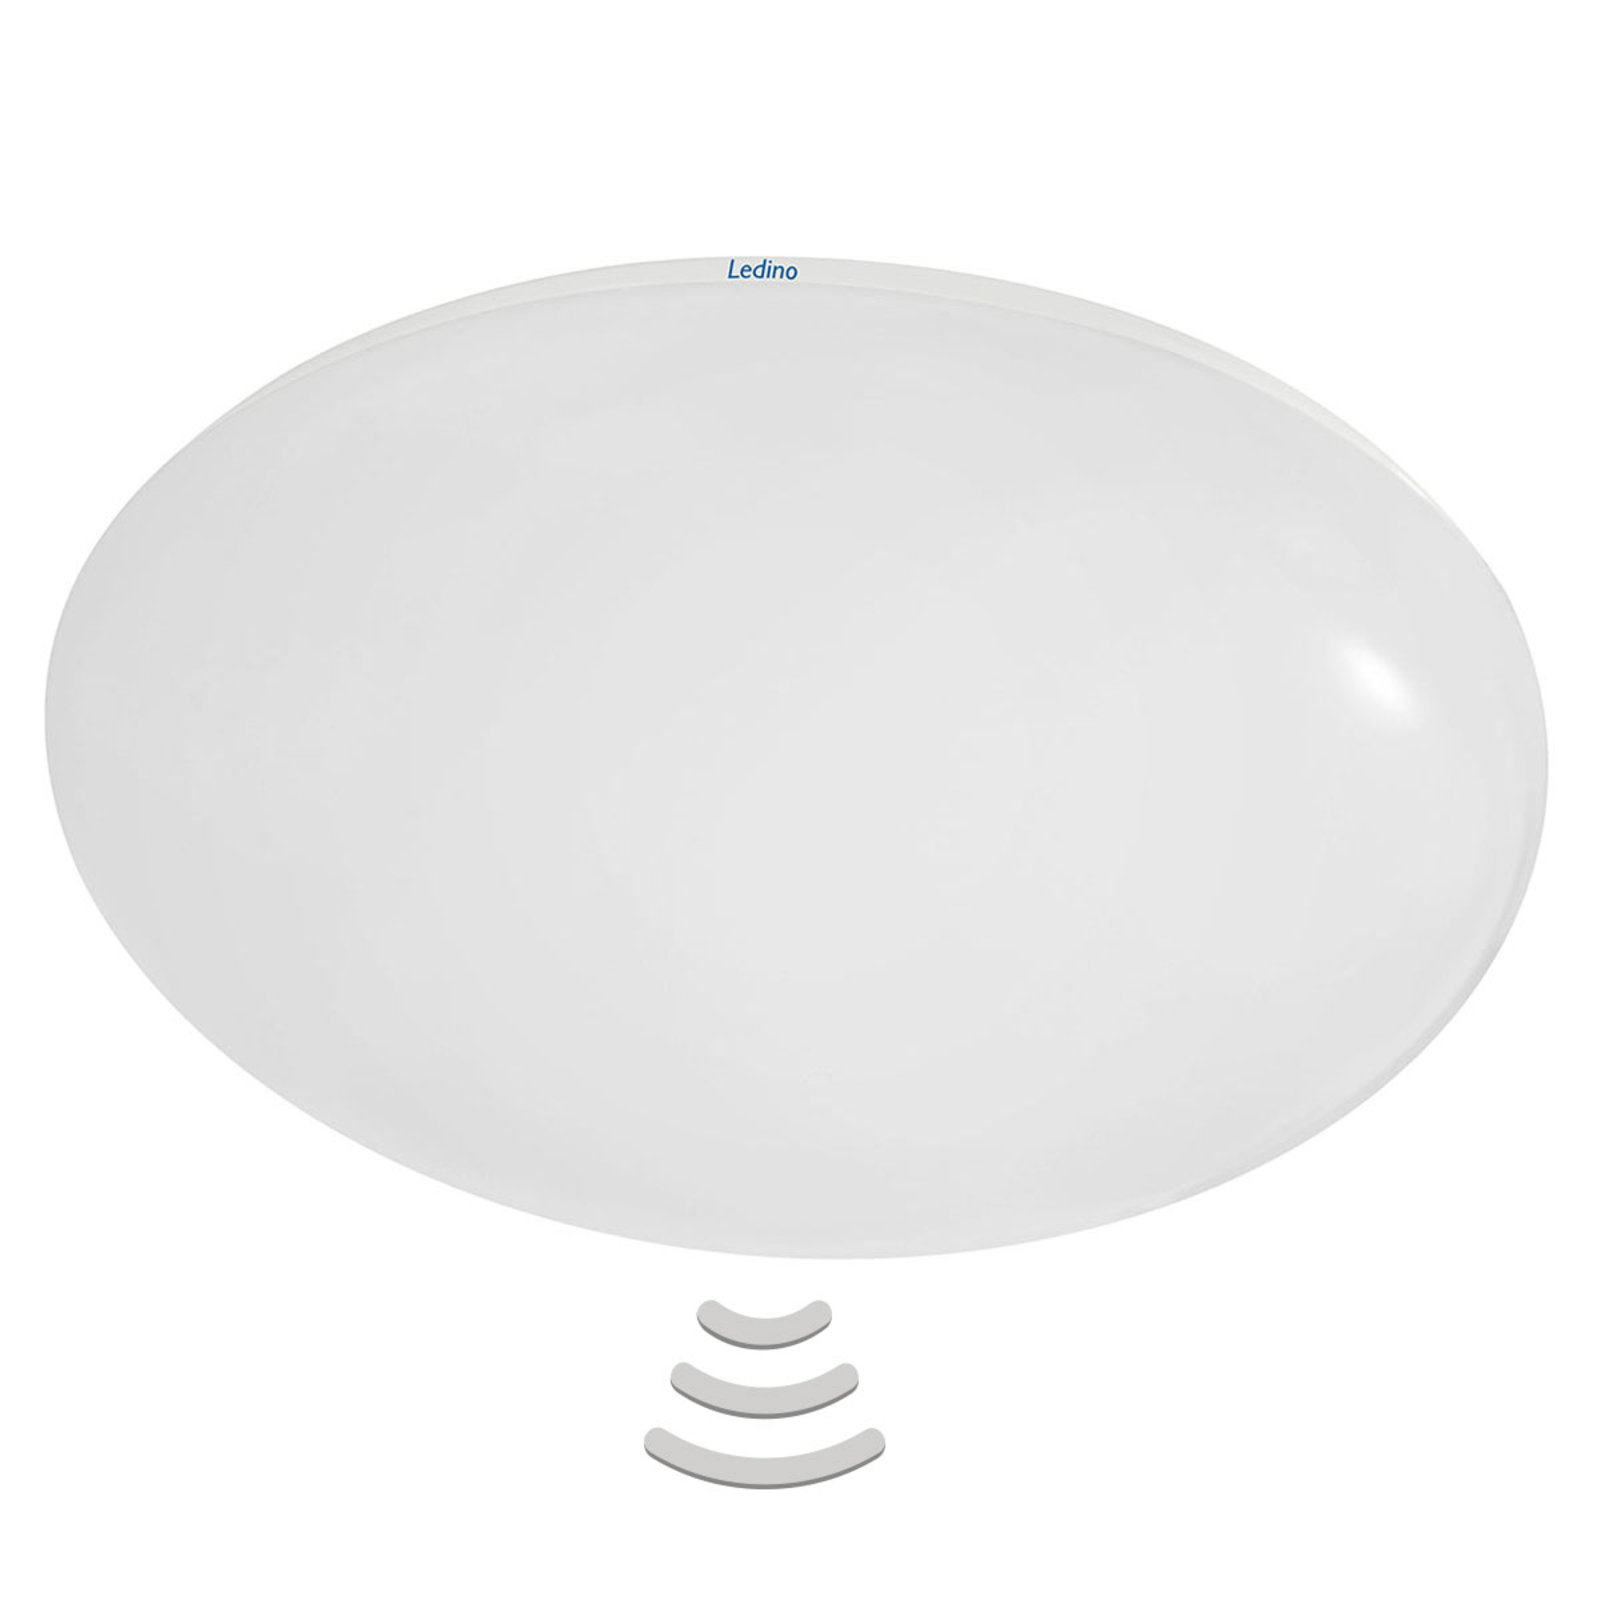 Altona LED ceiling light HF sensor, 4,000 K 36 cm | Lights.co.uk